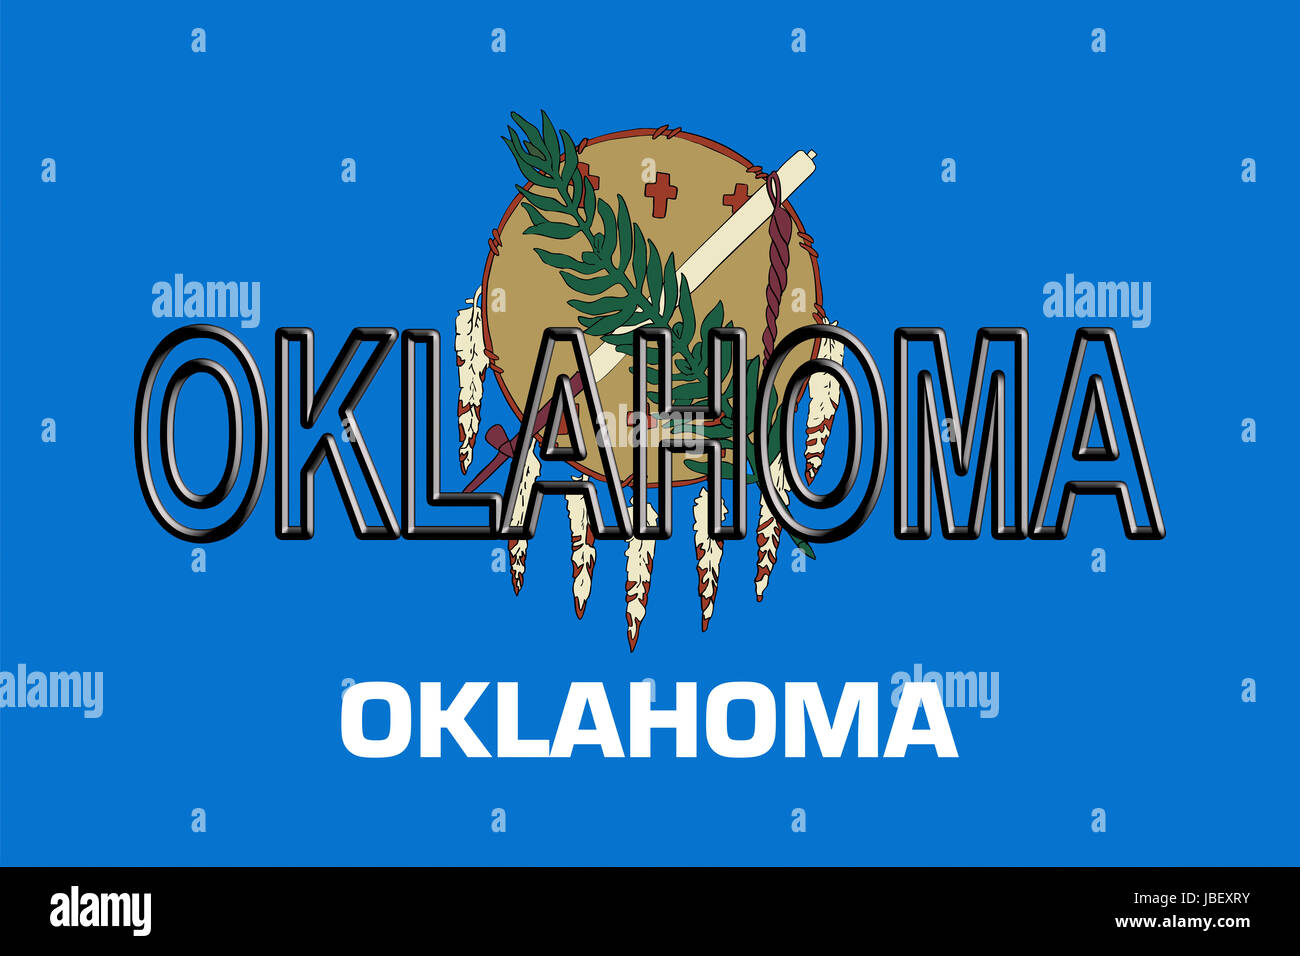 Abbildung der Flagge des Oklahomastate in Amerika mit dem Staat auf die Fahne geschrieben. Stockfoto